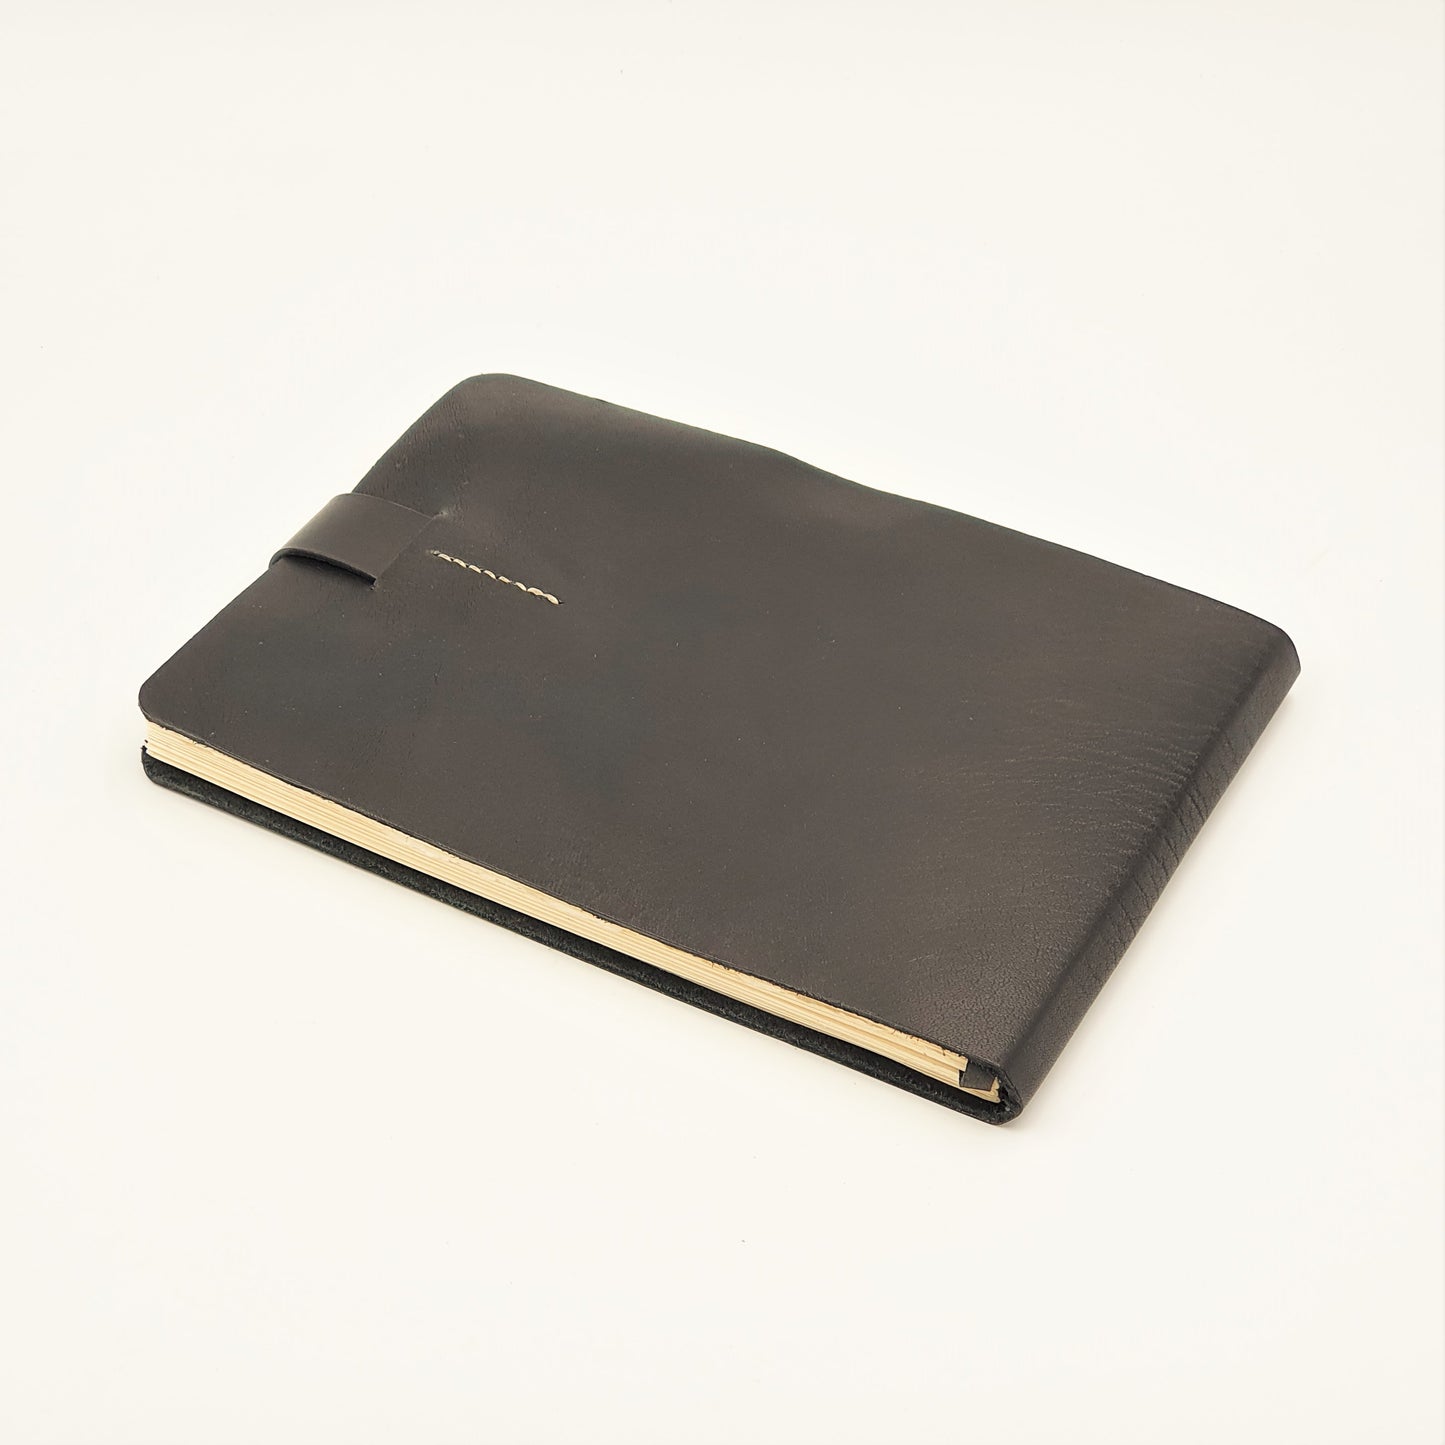 HERITAGE A5-L Leather Archival Grade Artist's Sketchbook